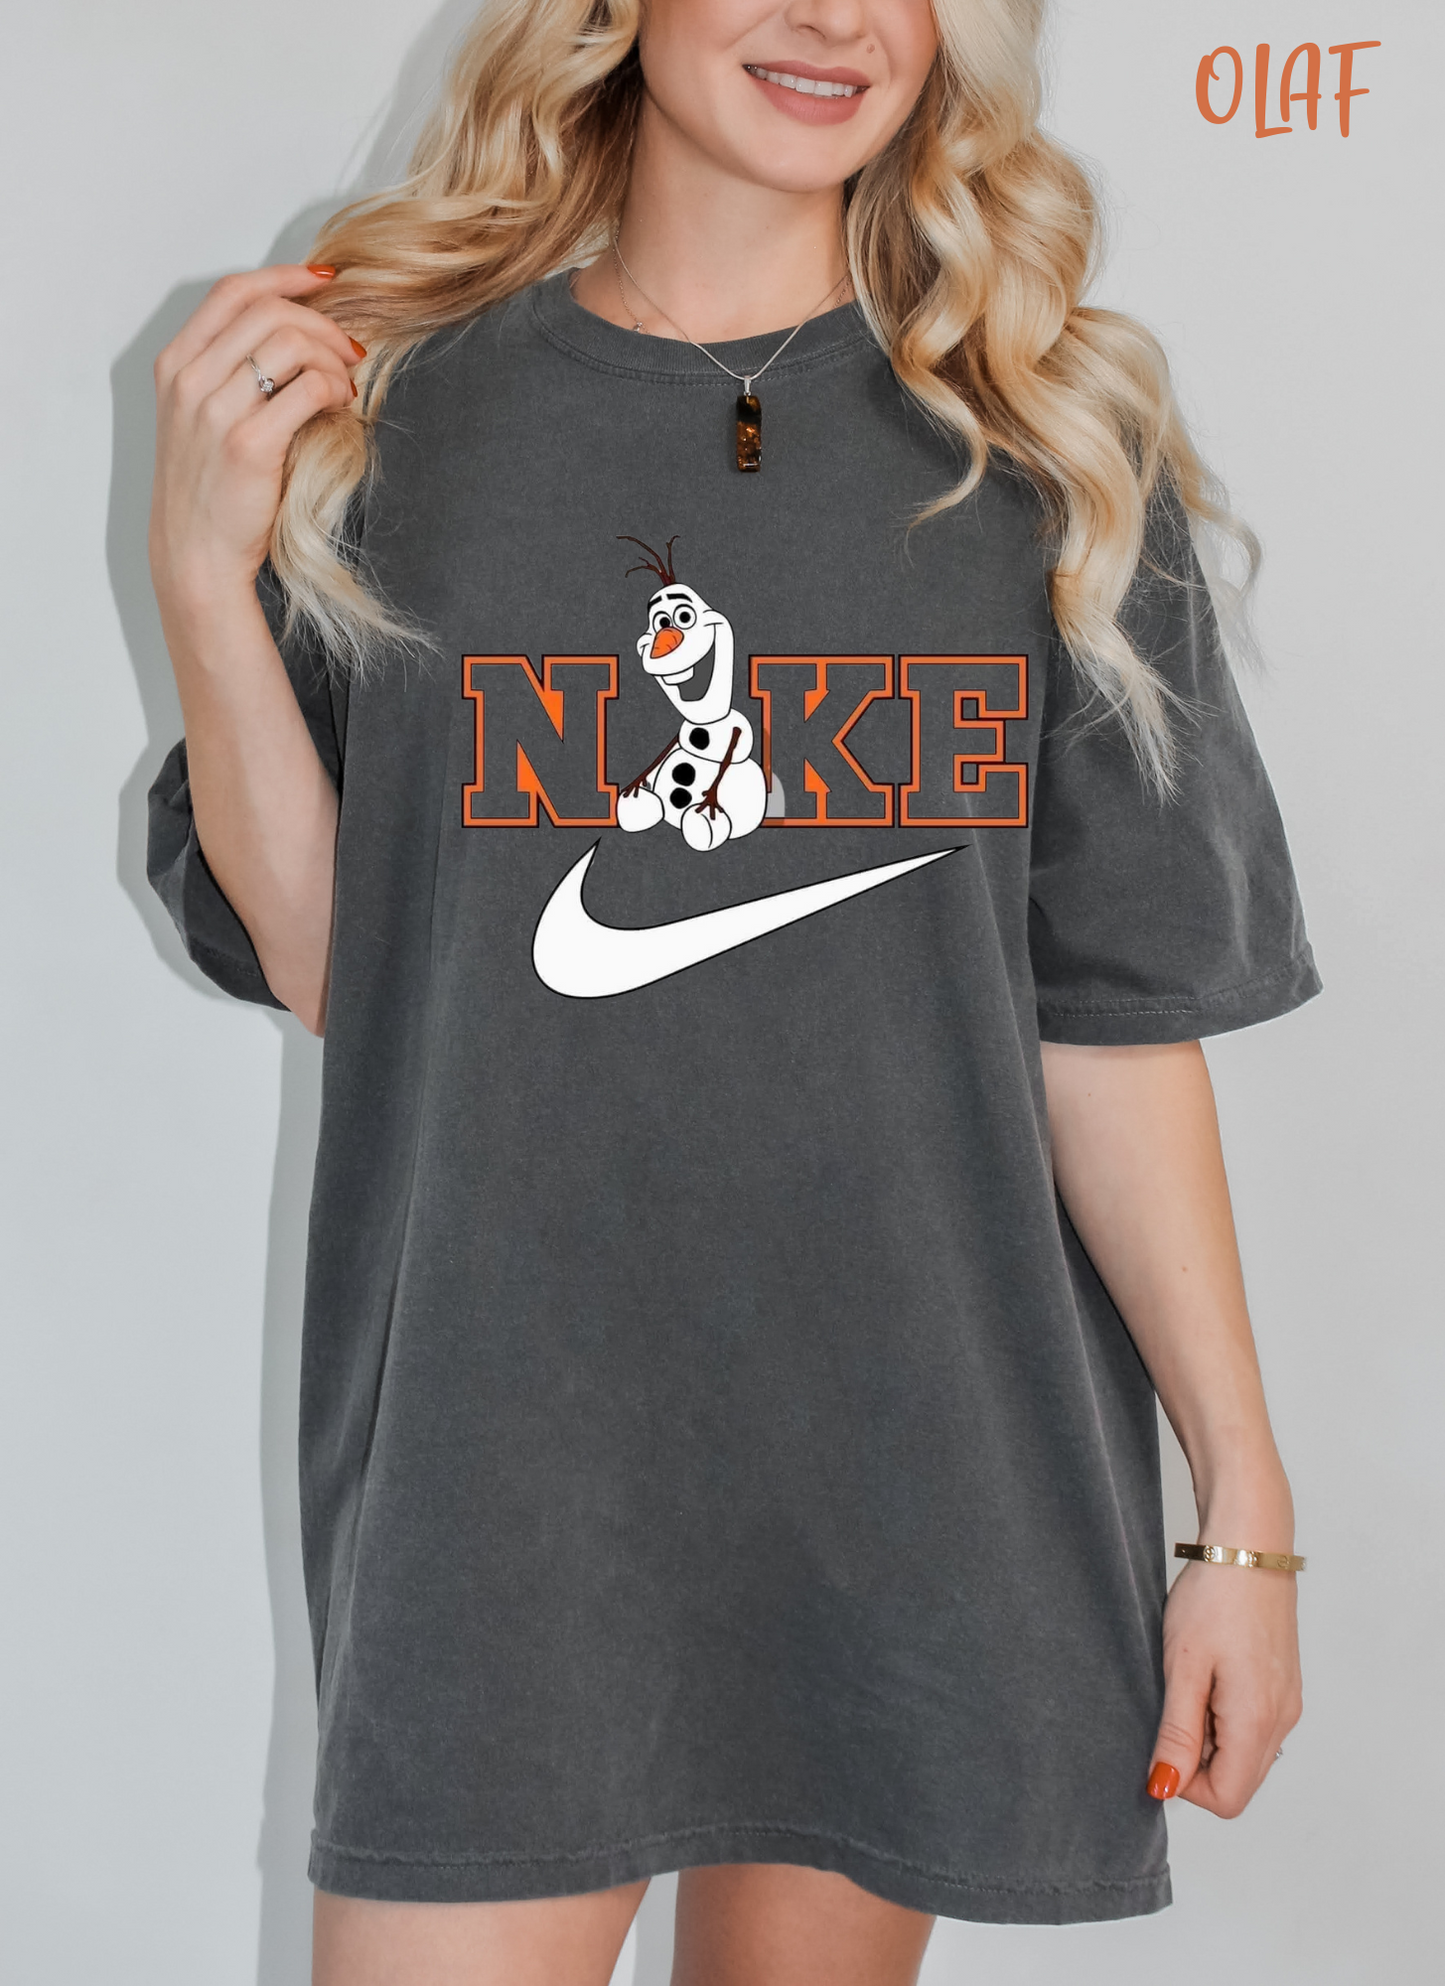 Noke Snowman